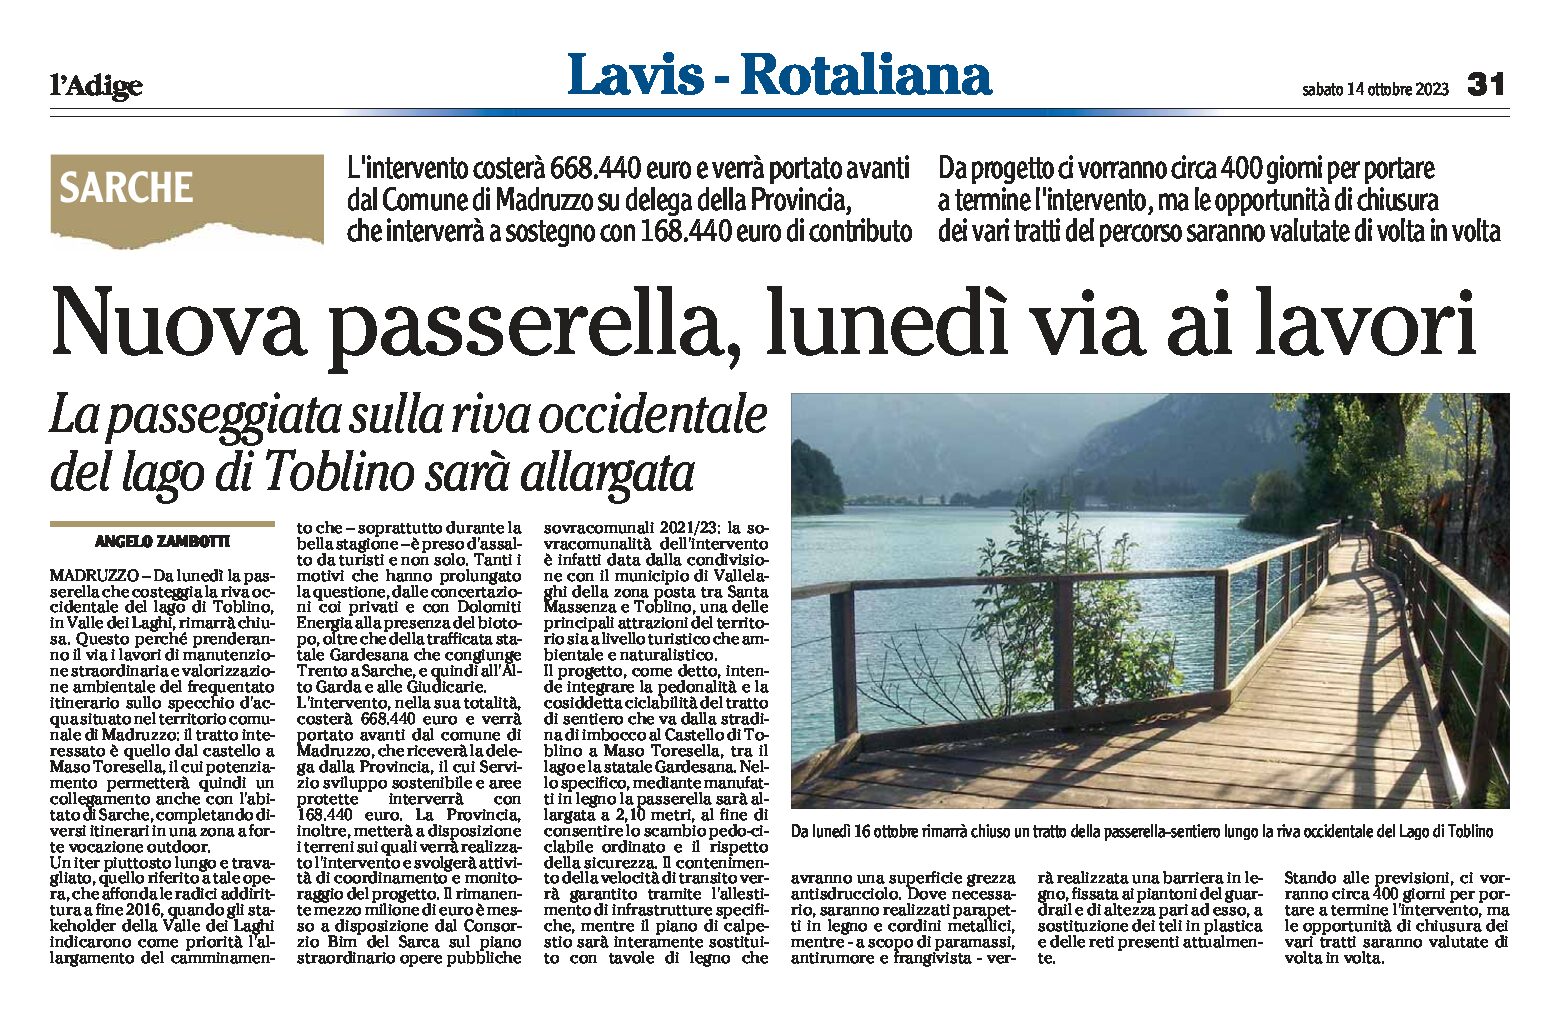 Lago di Toblino: nuova passerella, la passeggiata sarà allargata